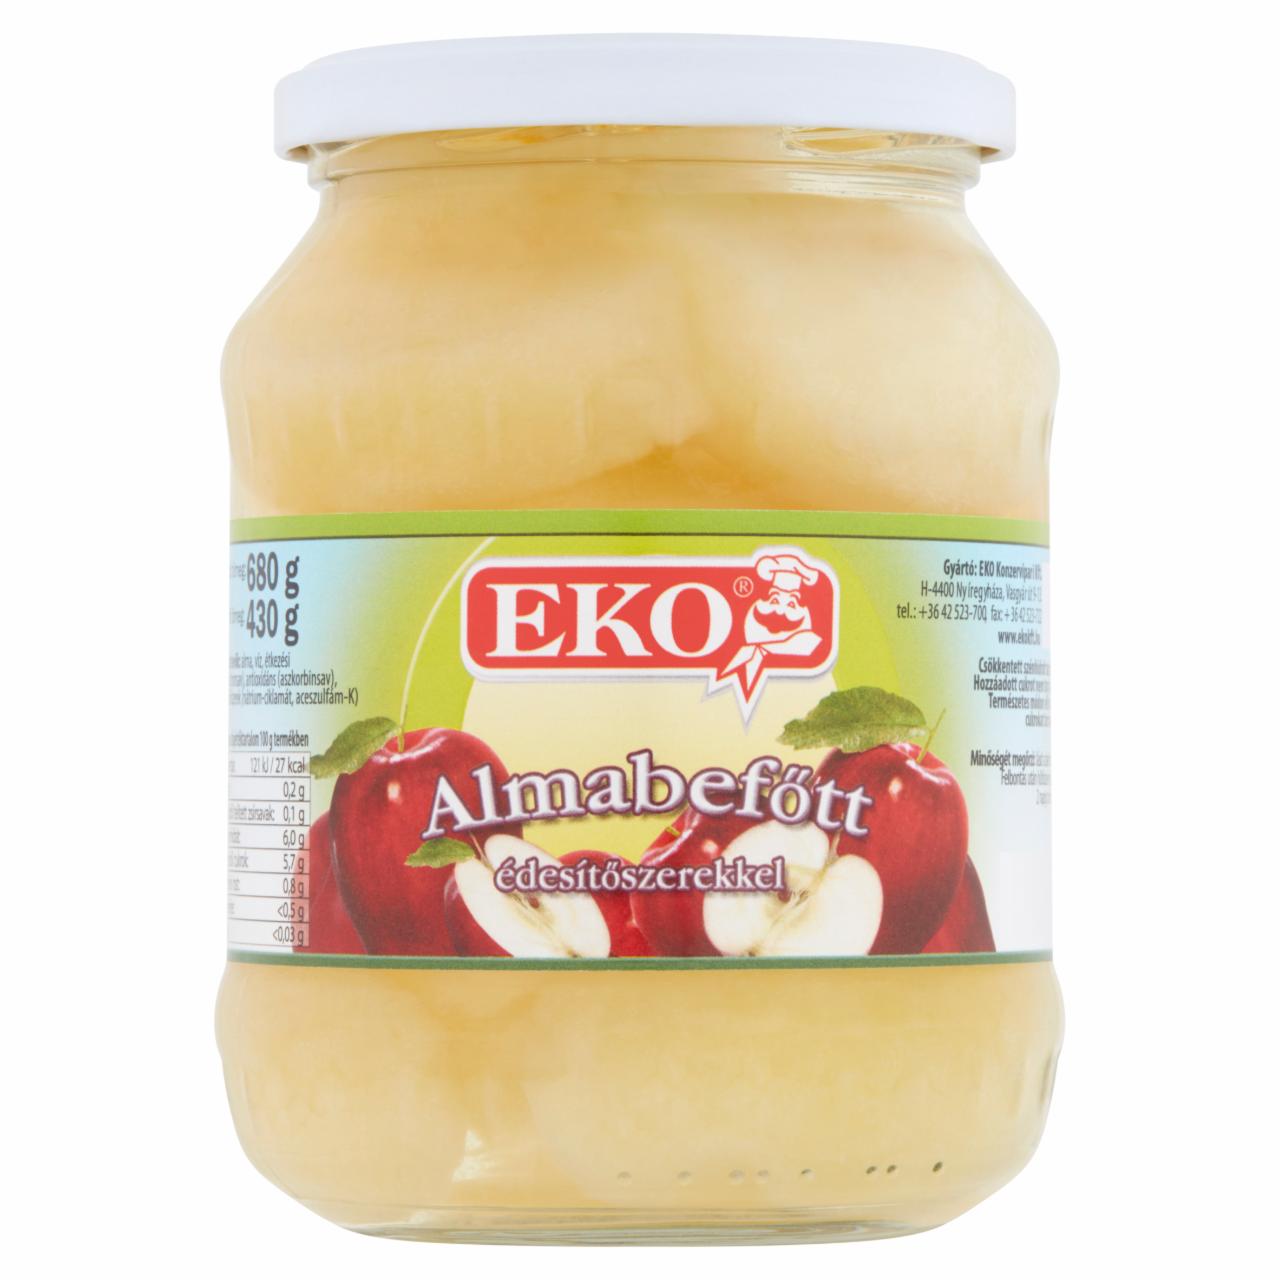 Képek - Eko almabefőtt édesítőszerekkel 680 g